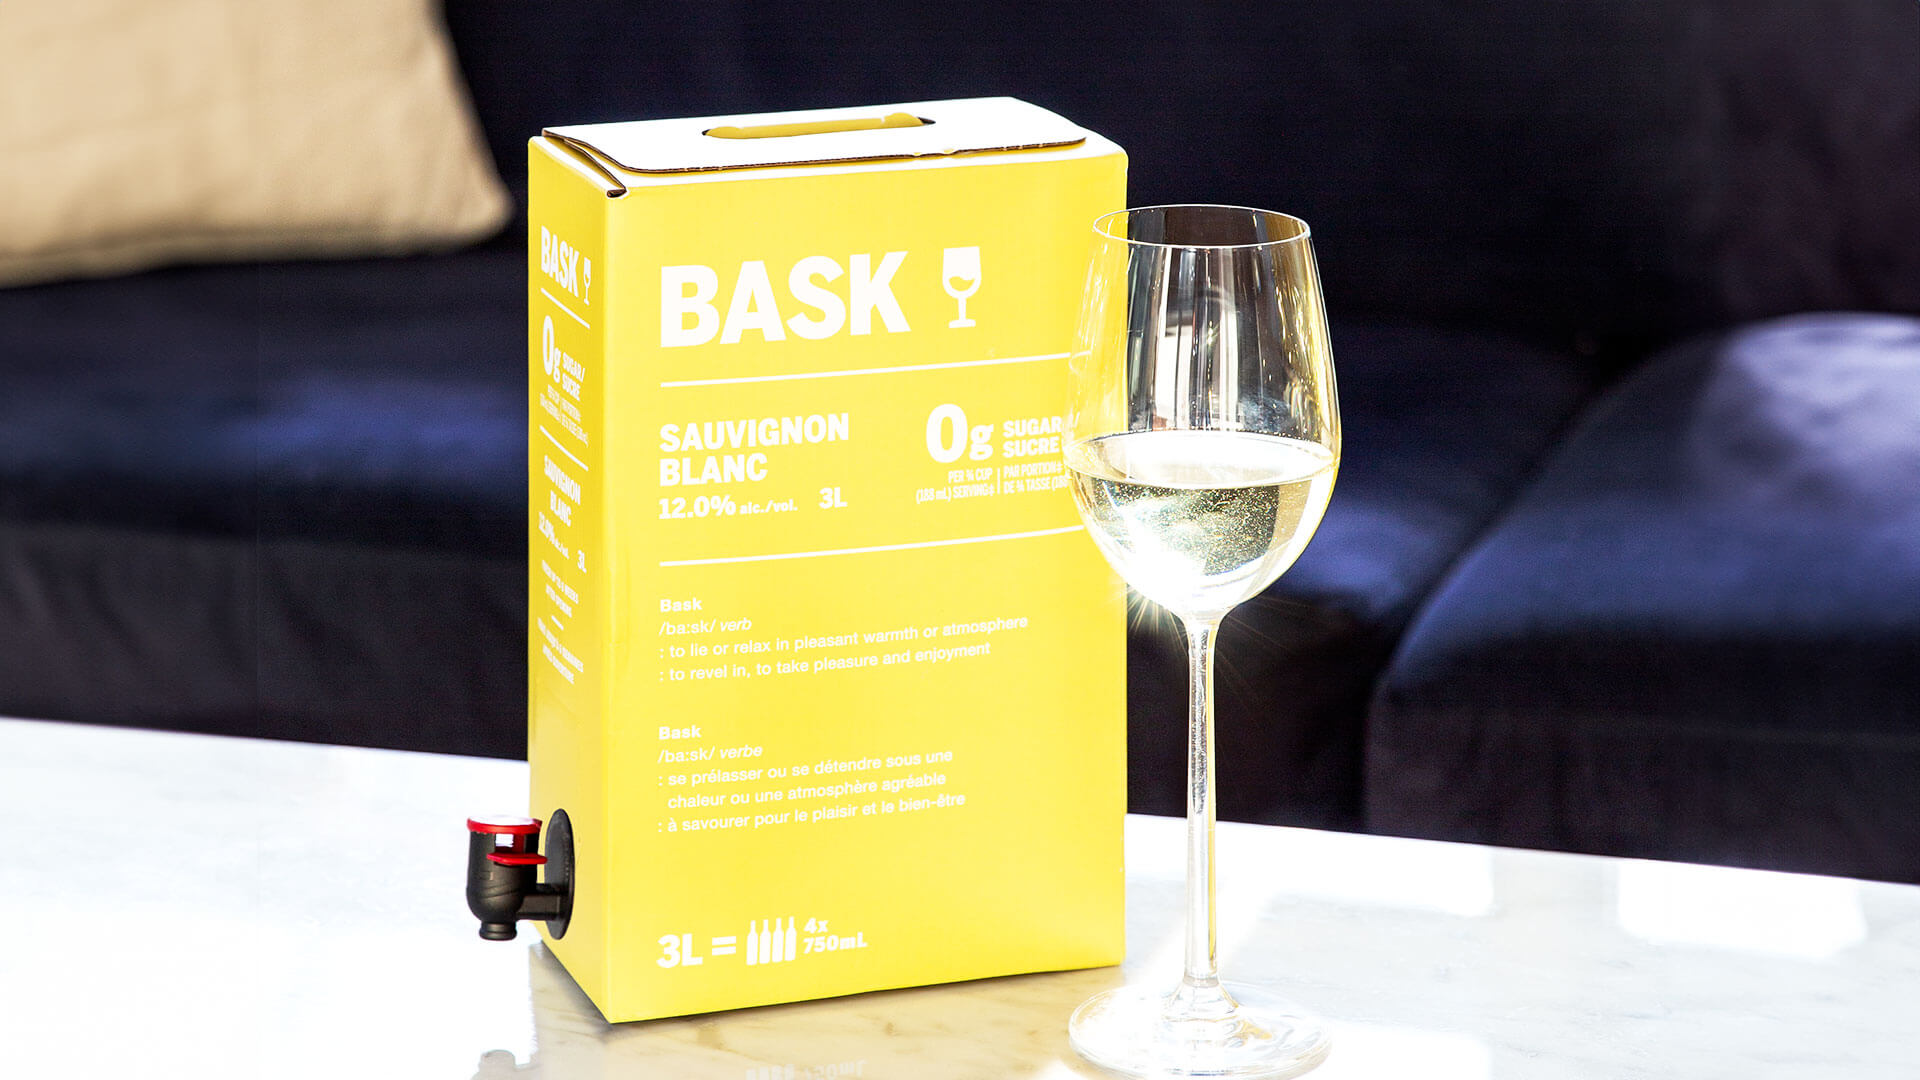 Bask Sauvignon Blanc 3L Box Wine and Glass of White Wine